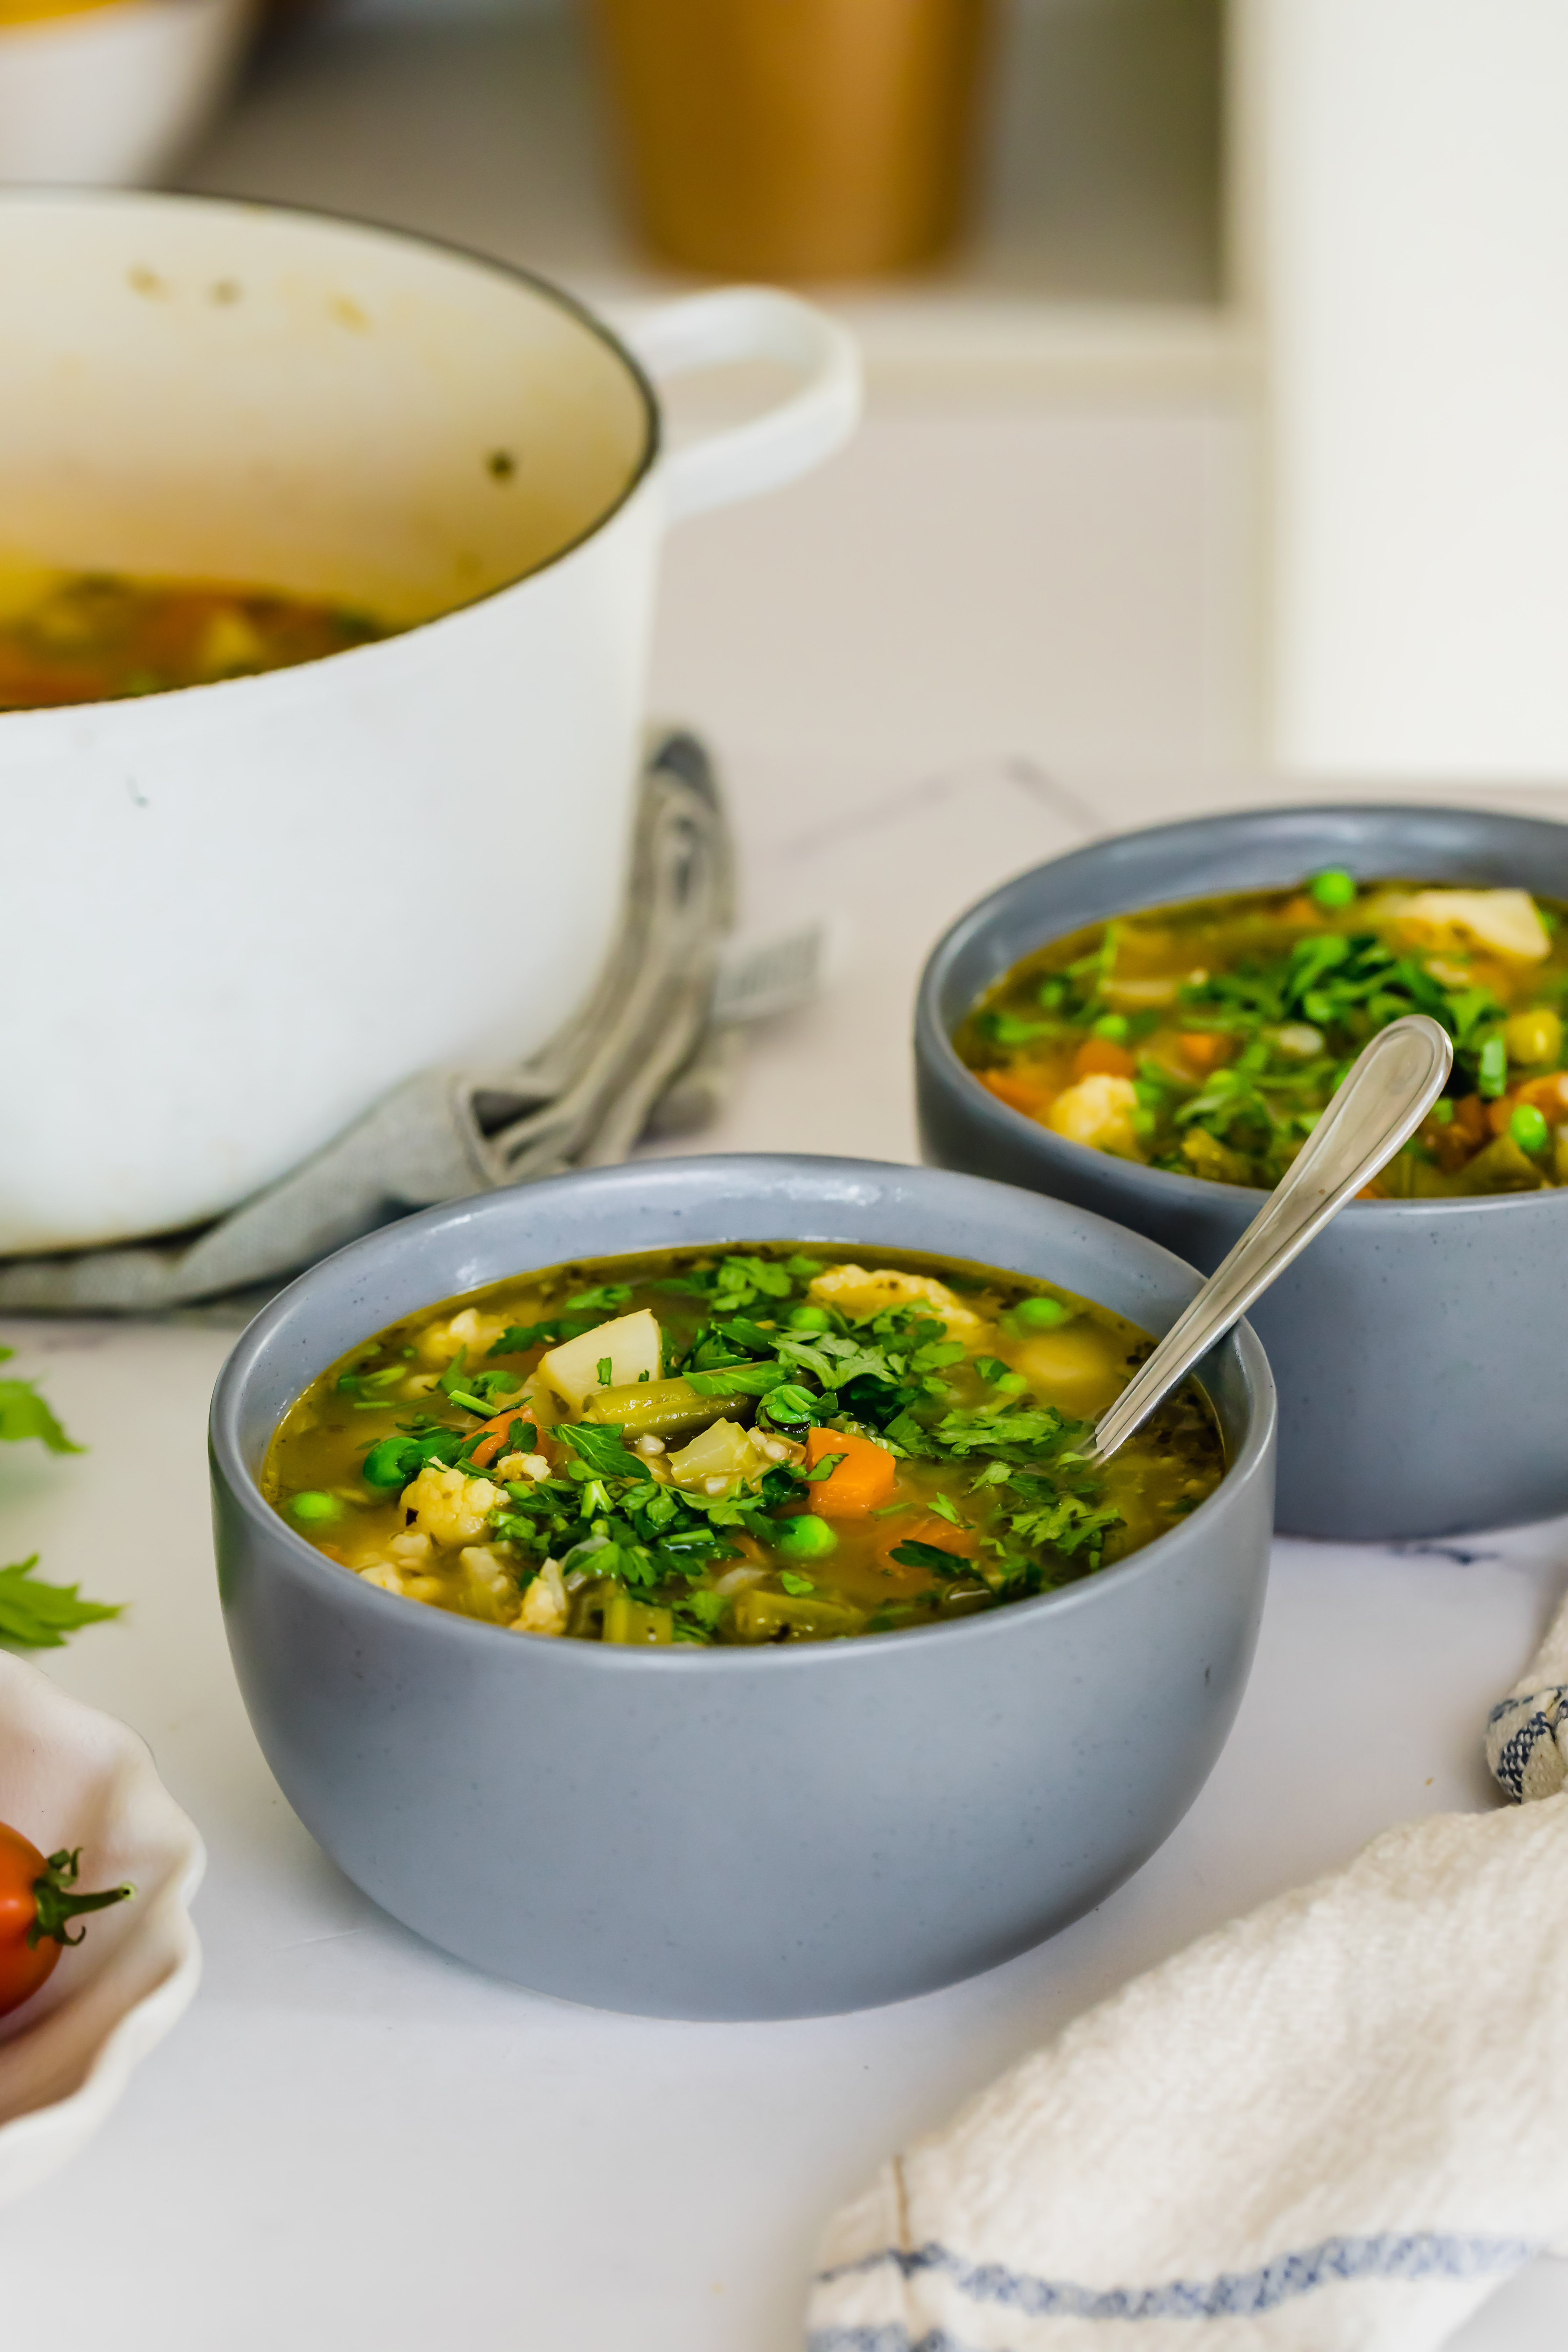 Gut-Healing Vegetable Soup